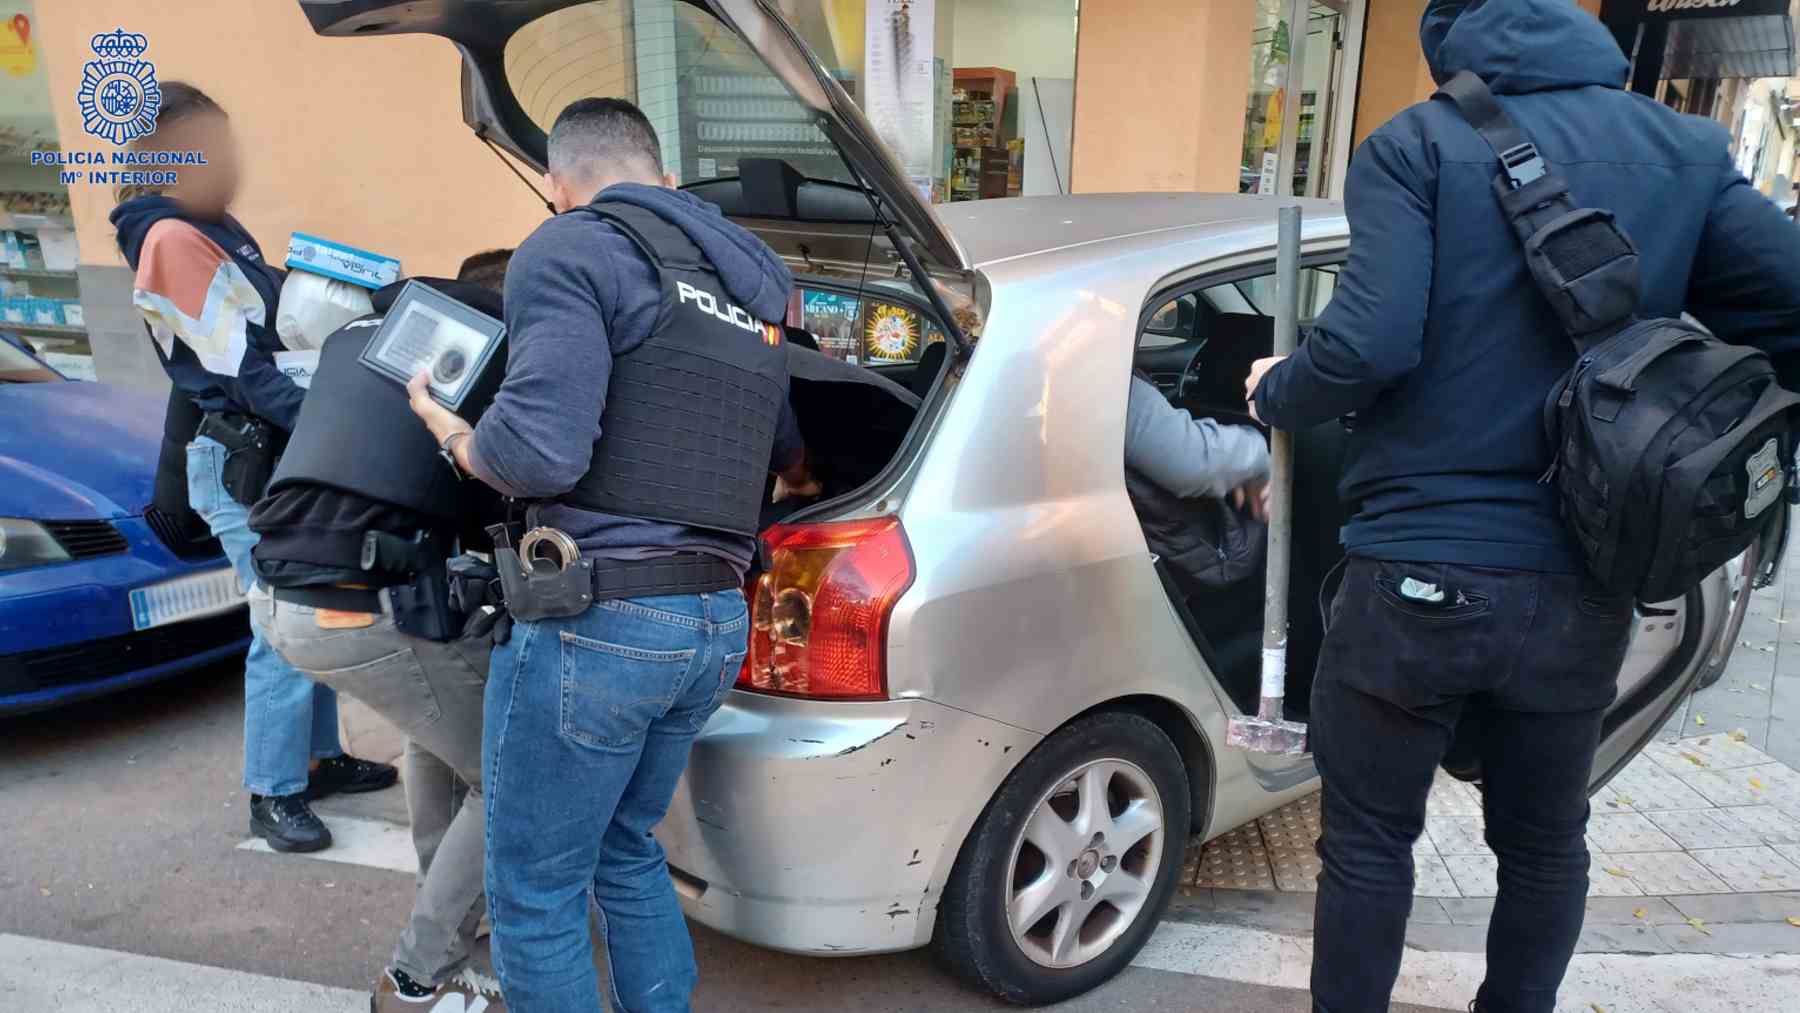 La Policía Nacional ha desmantelado dos organizaciones criminales dedicadas al narcotráfico en Mallorca con hasta 27 detenidos.